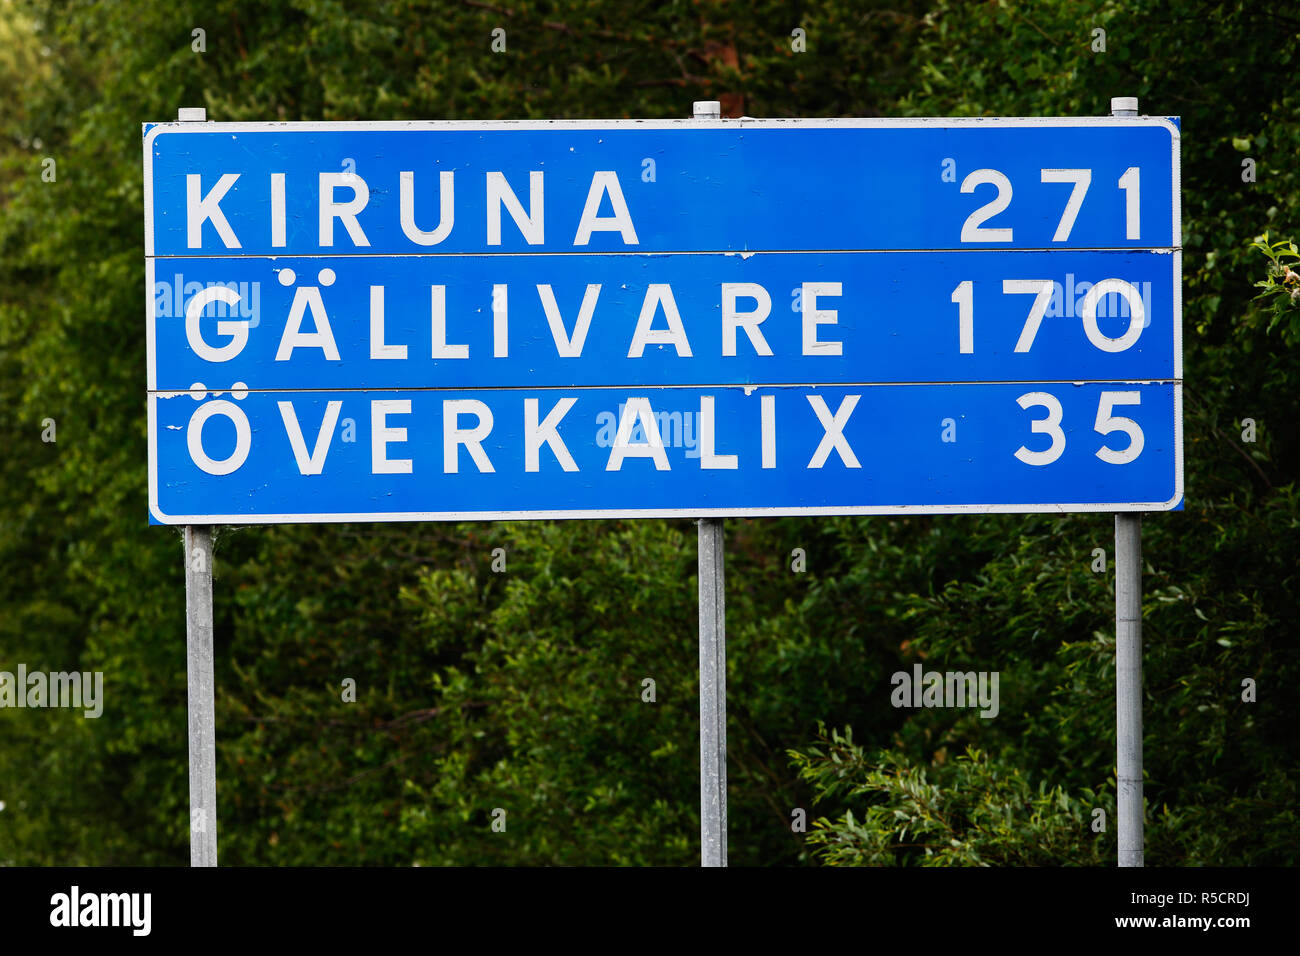 Cartello stradale con distanze per la città svedese di Kiruna, Gallevare Overkalix e situato nella parte settentrionale del paese. Foto Stock